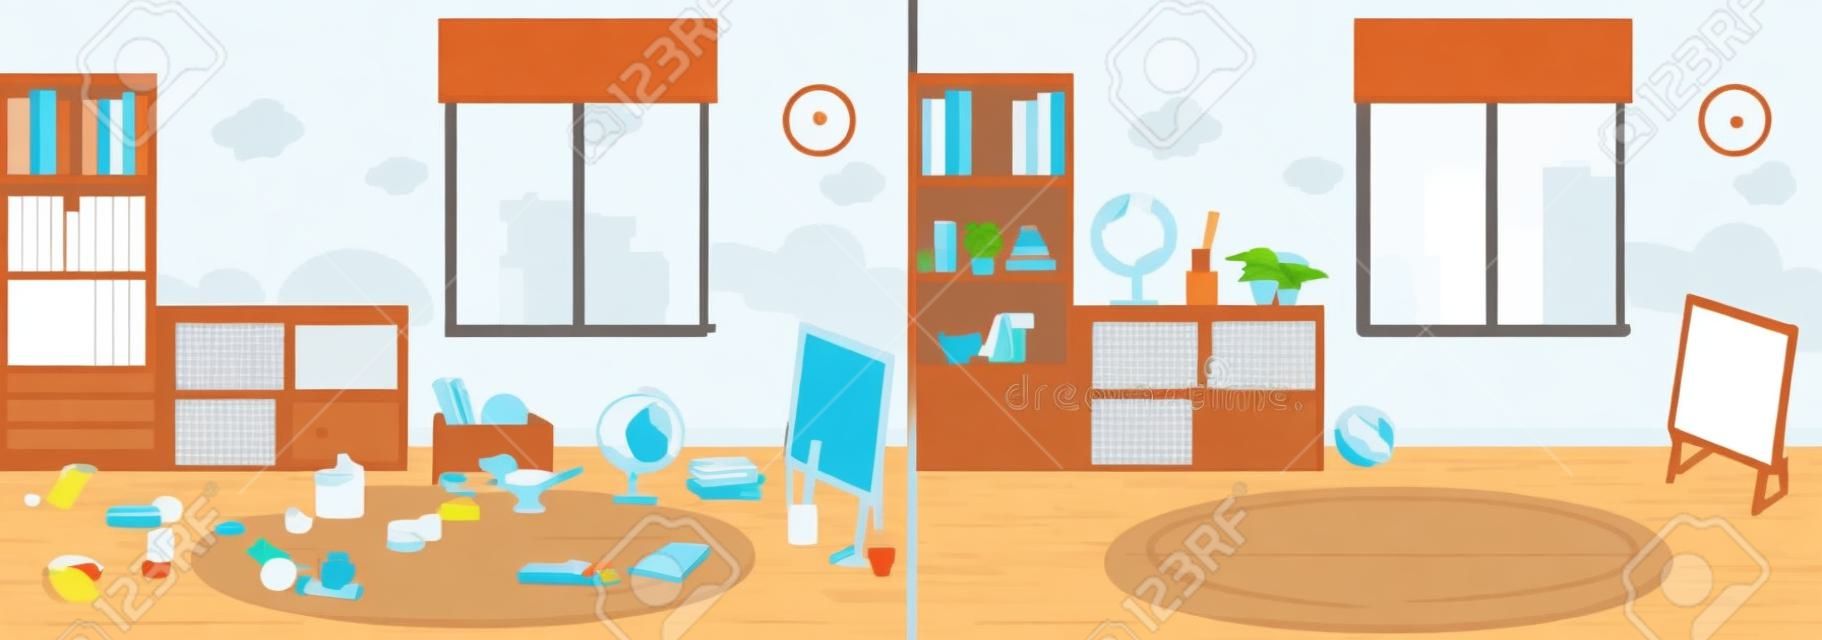 illustration vectorielle de chambre propre et sale